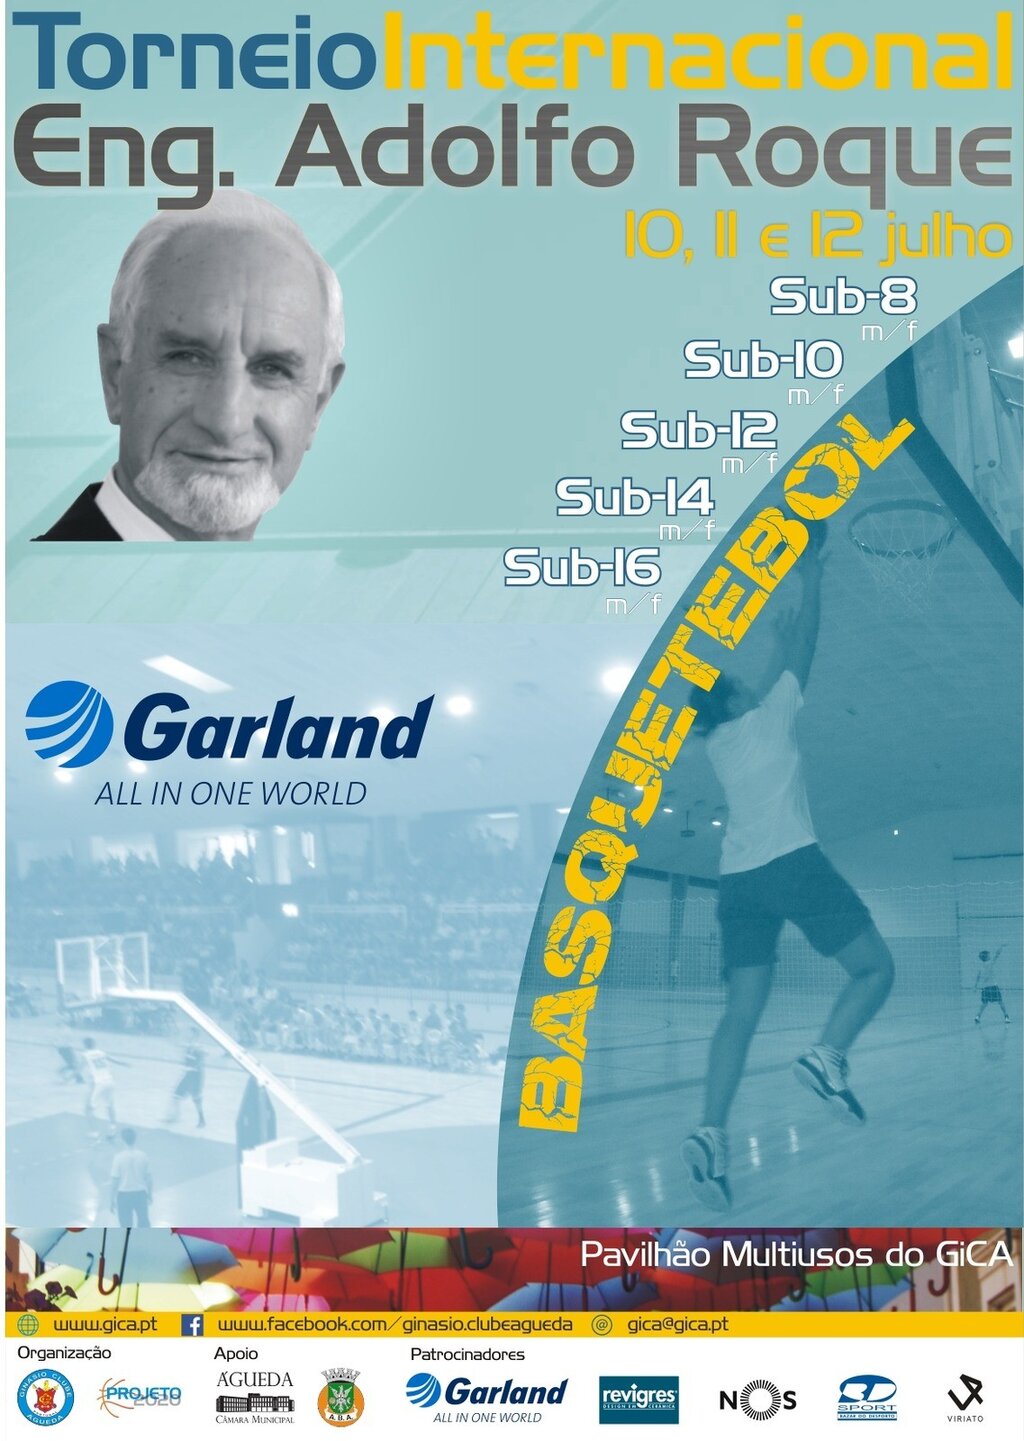 Torneio Internacional Engº Adolfo Roque – Garland